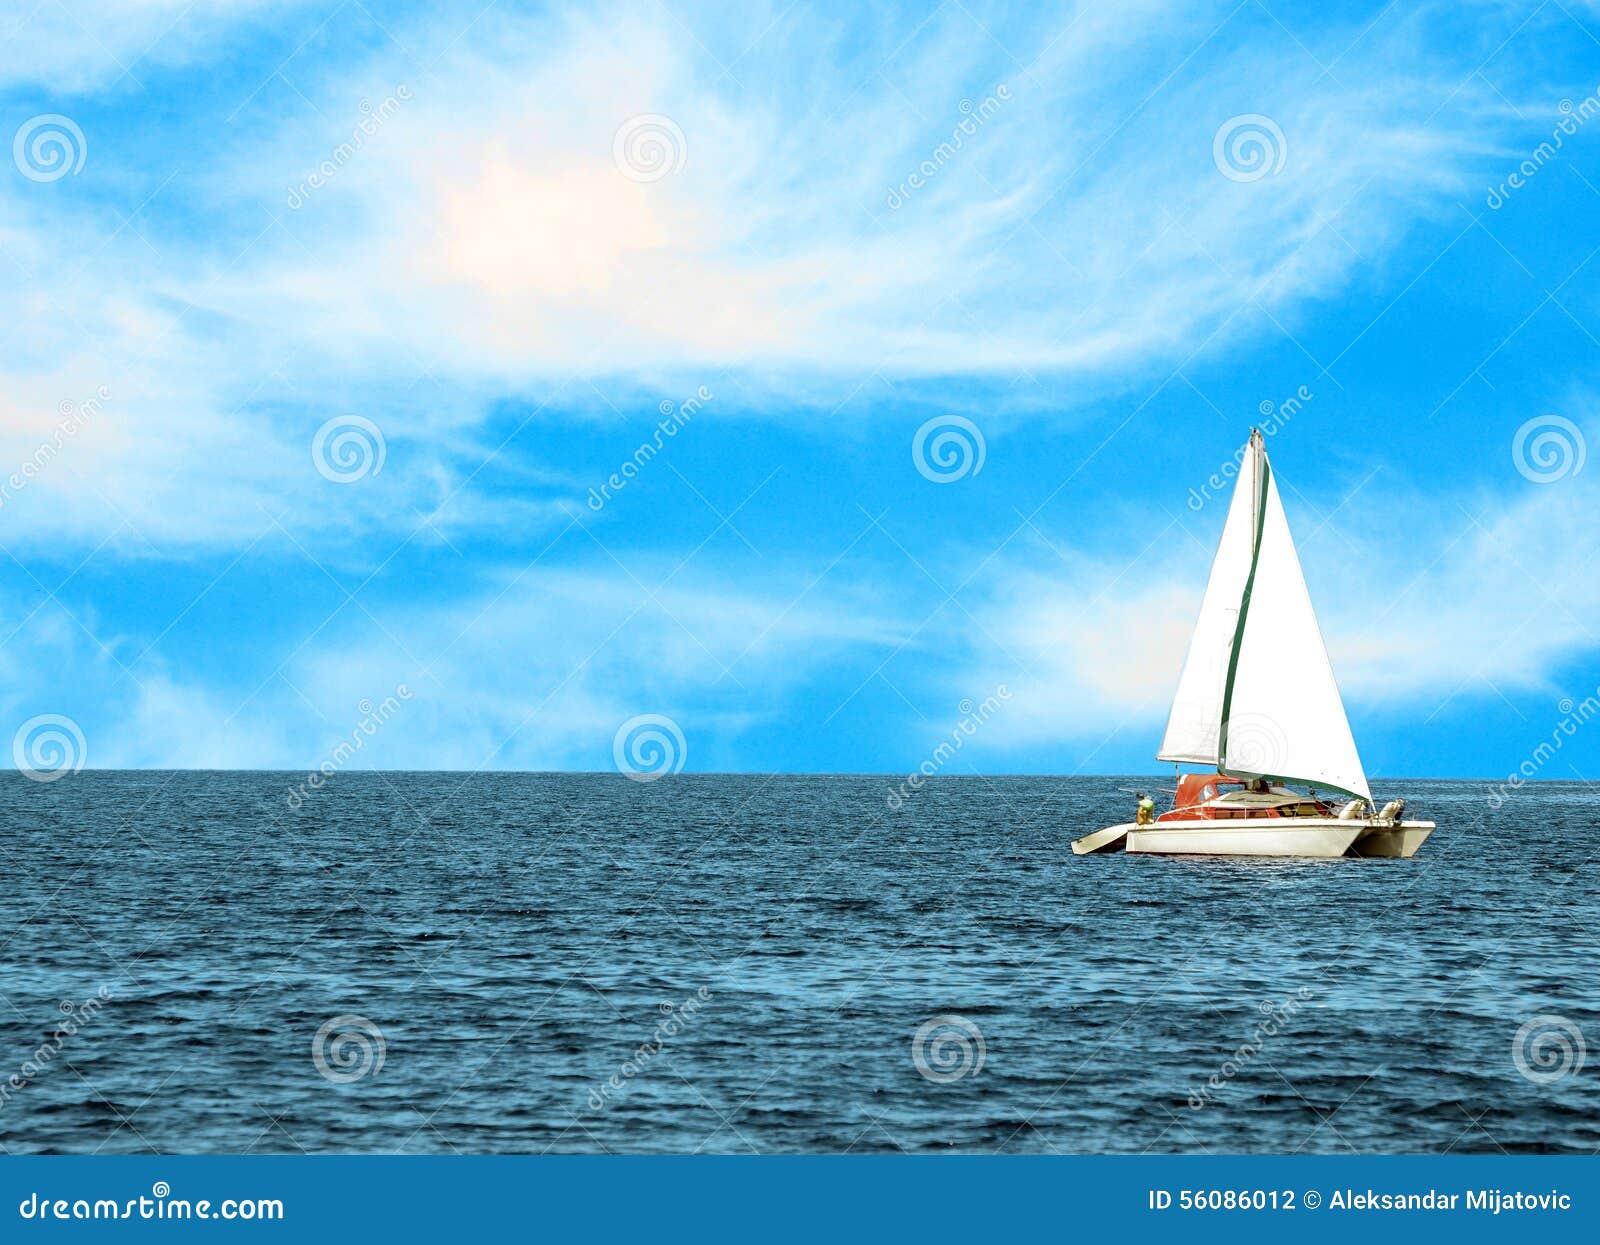 Яхта В Море Фото Красивые